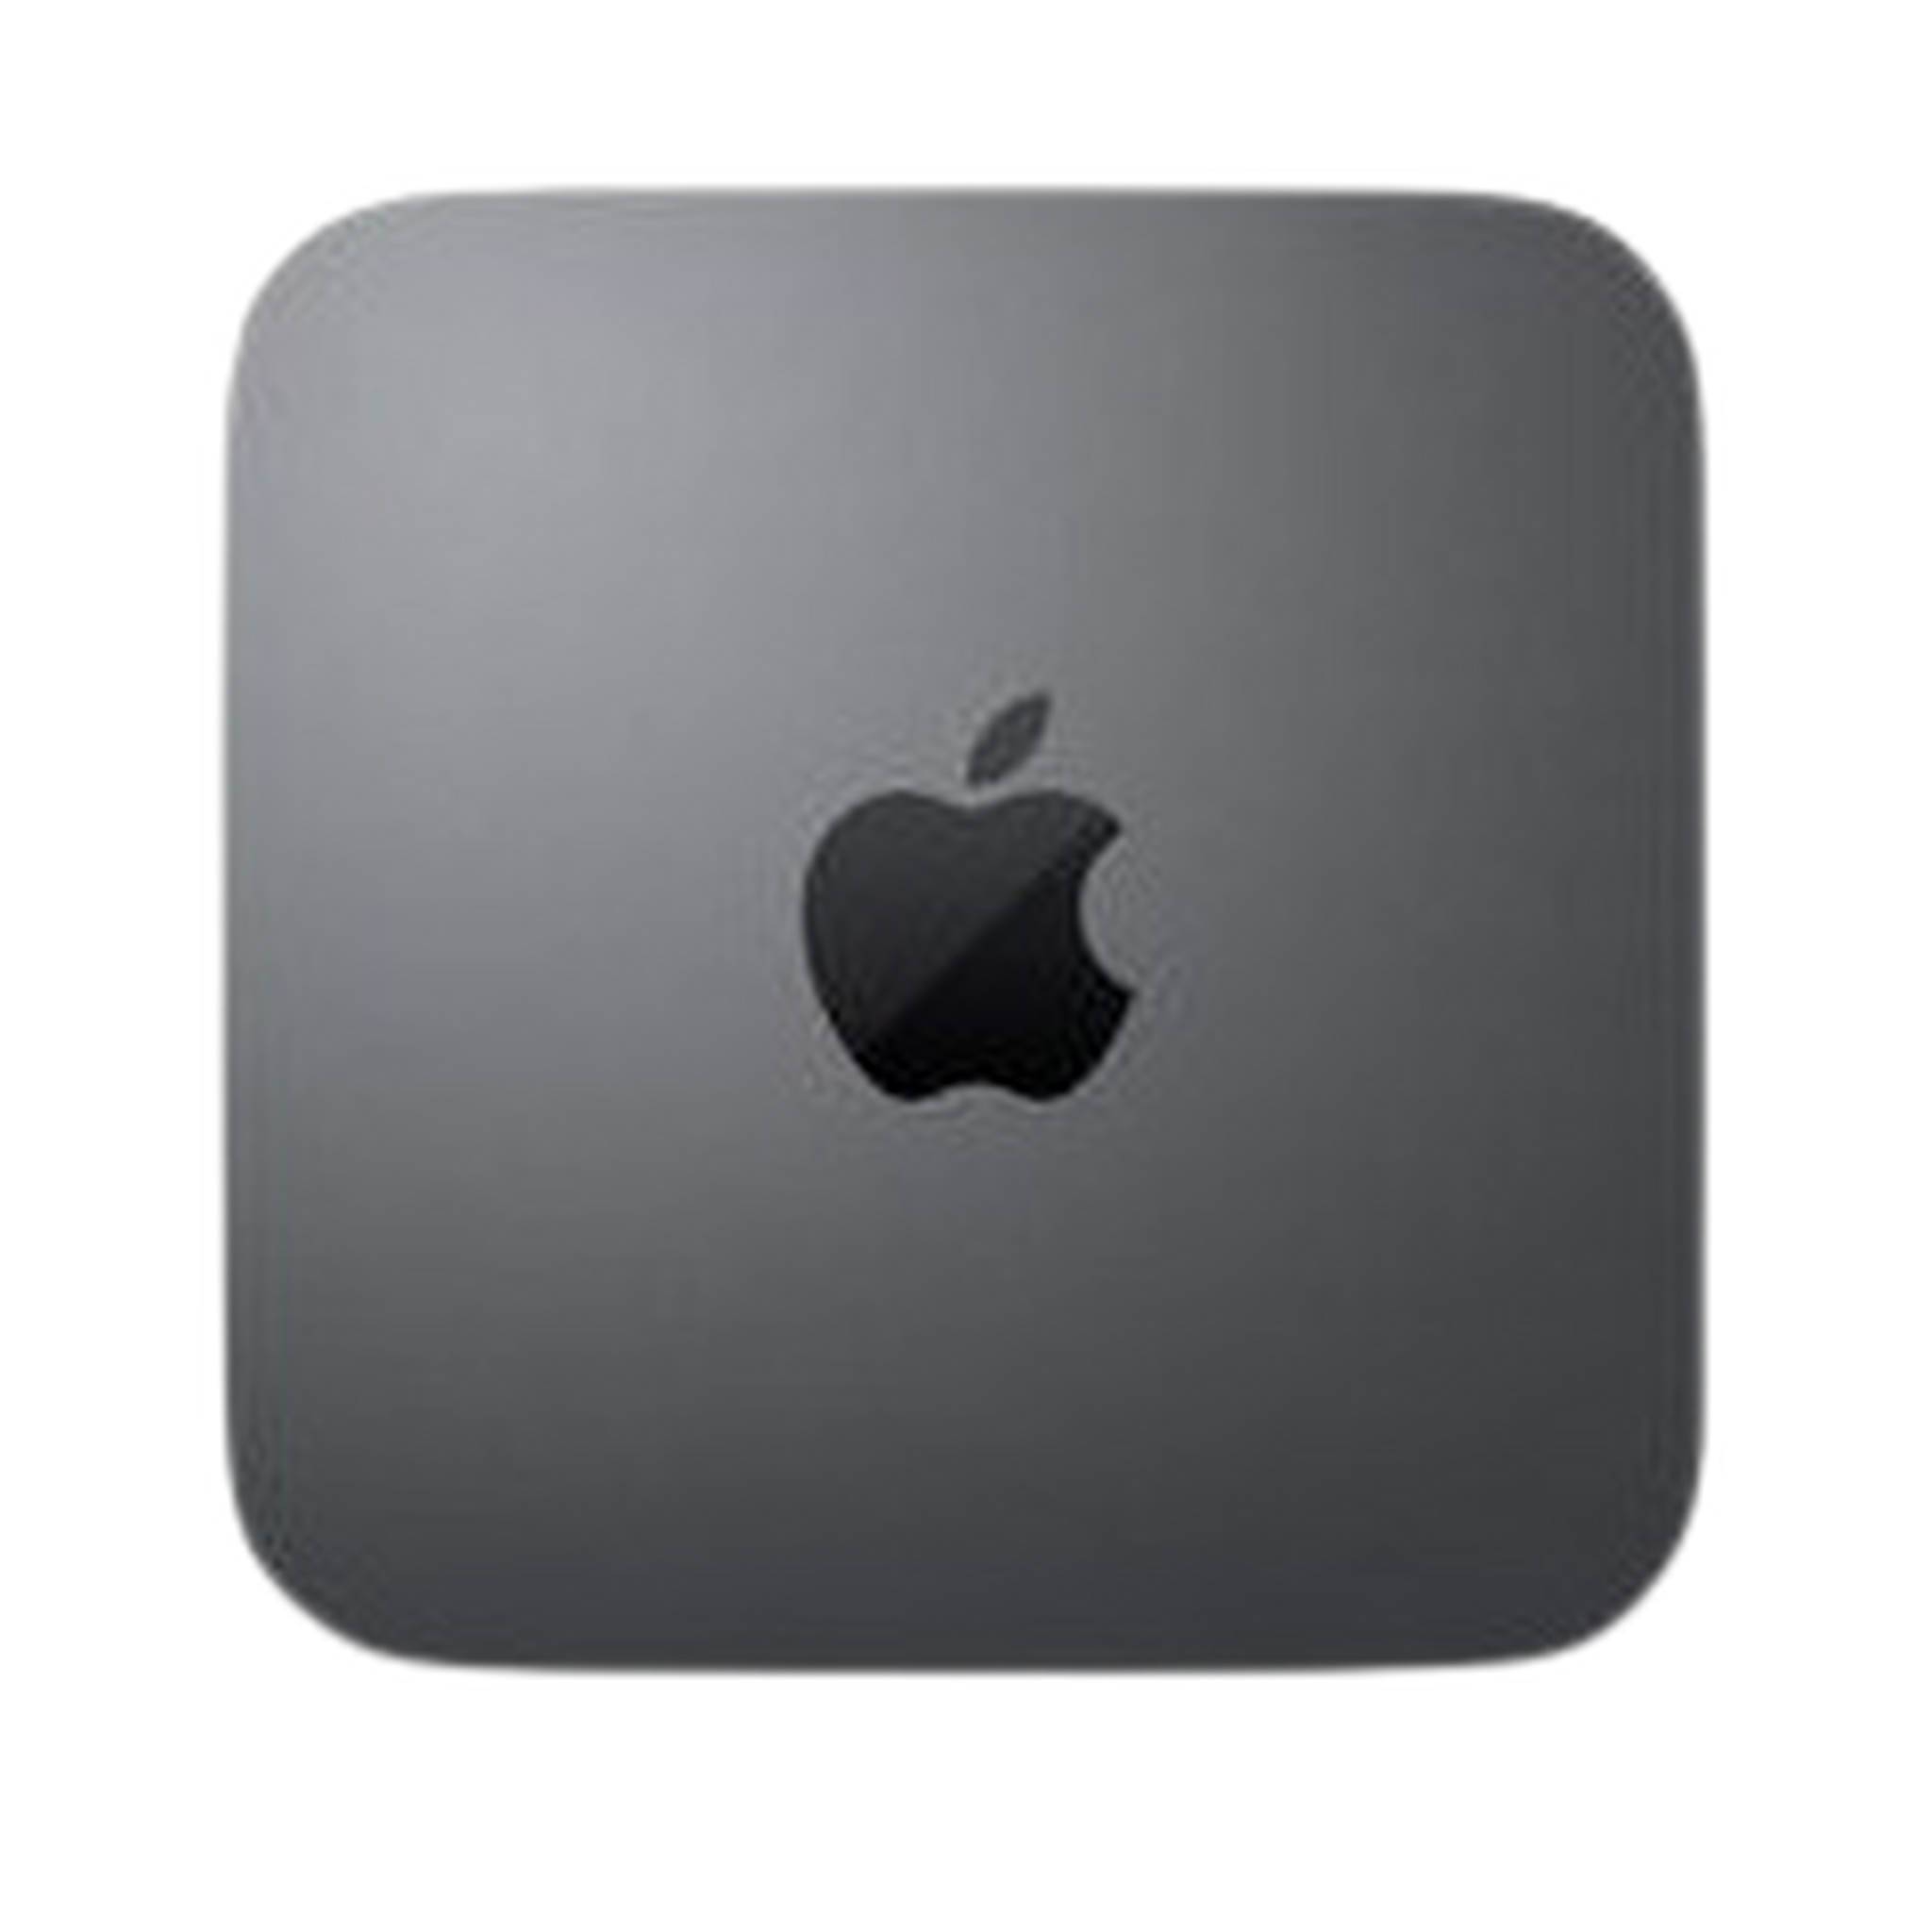 Apple Mac Mini Core i5 8GB RAM 256GB SSD Desktop